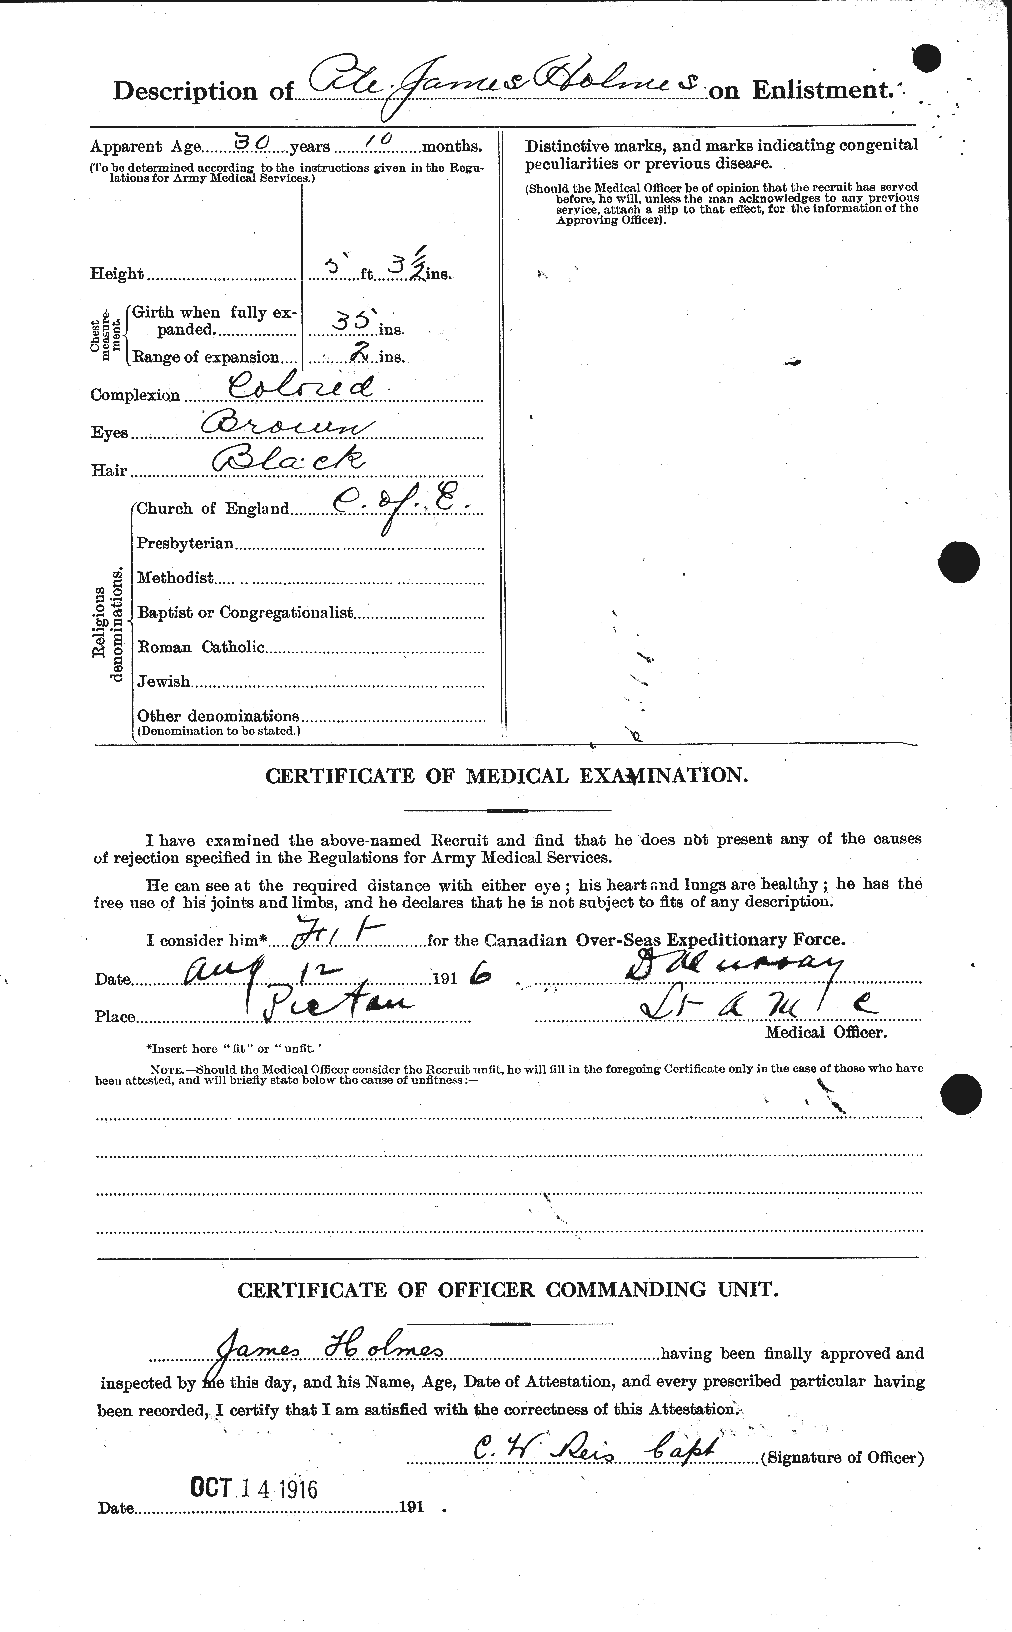 Dossiers du Personnel de la Première Guerre mondiale - CEC 401761b